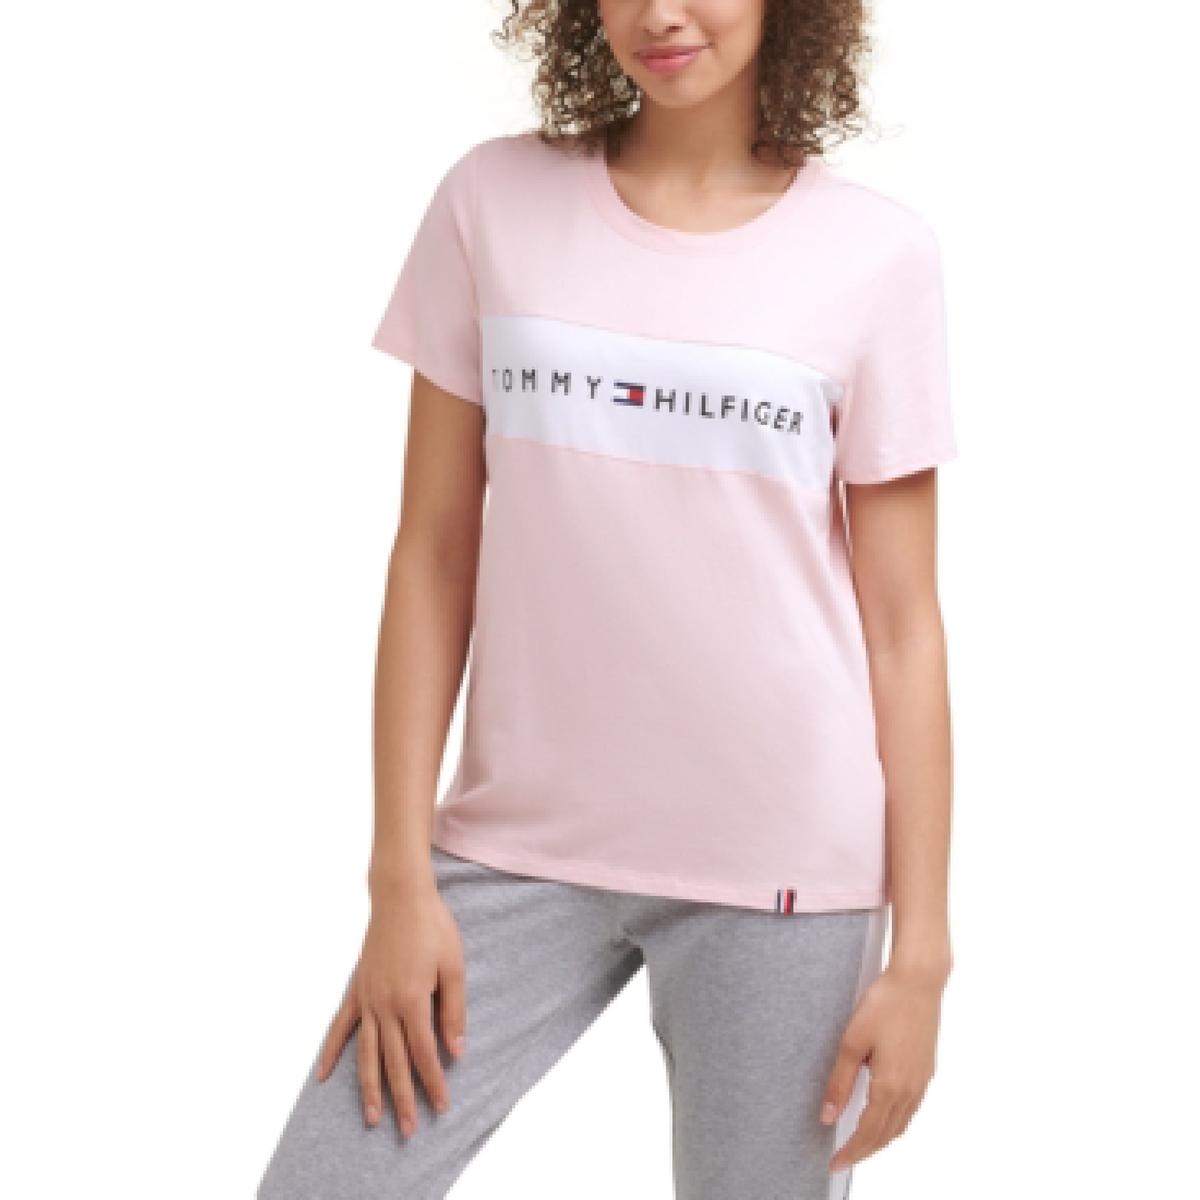 Tommy Hilfiger Sport Womens Cotton Blend Activewear T-Shirt